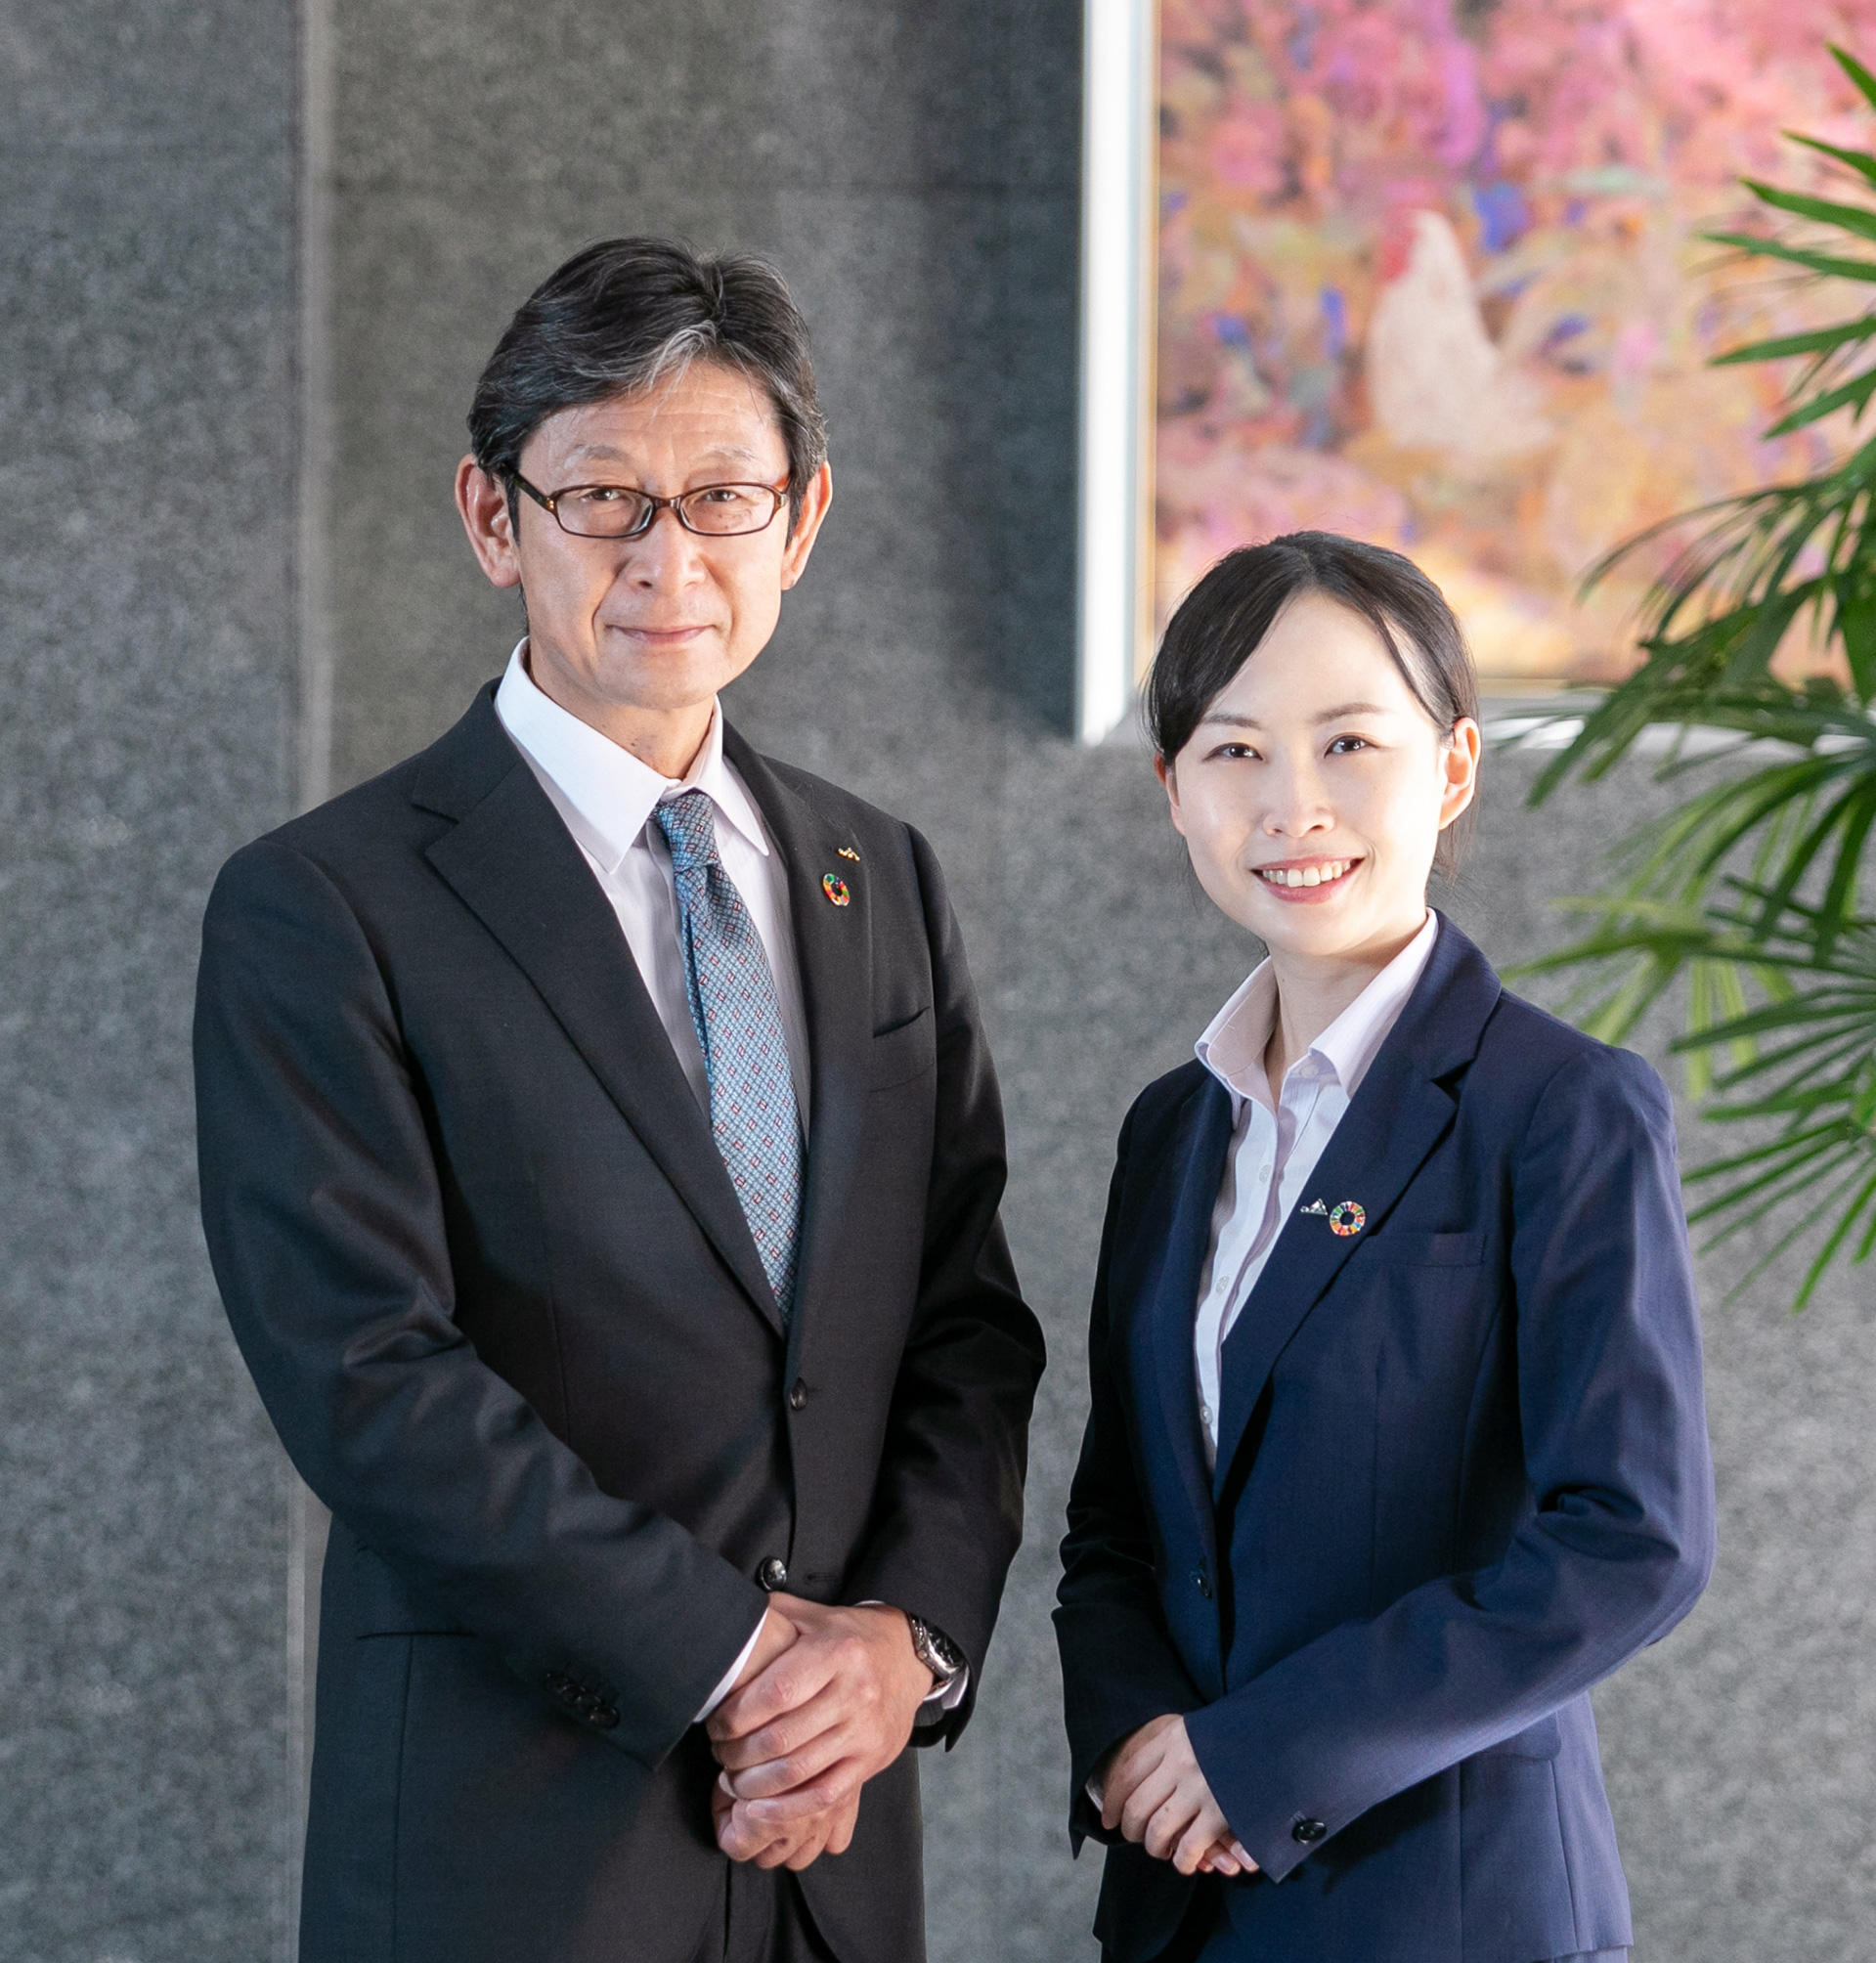 左右に立っている長野県信連の理事長と採用担当者